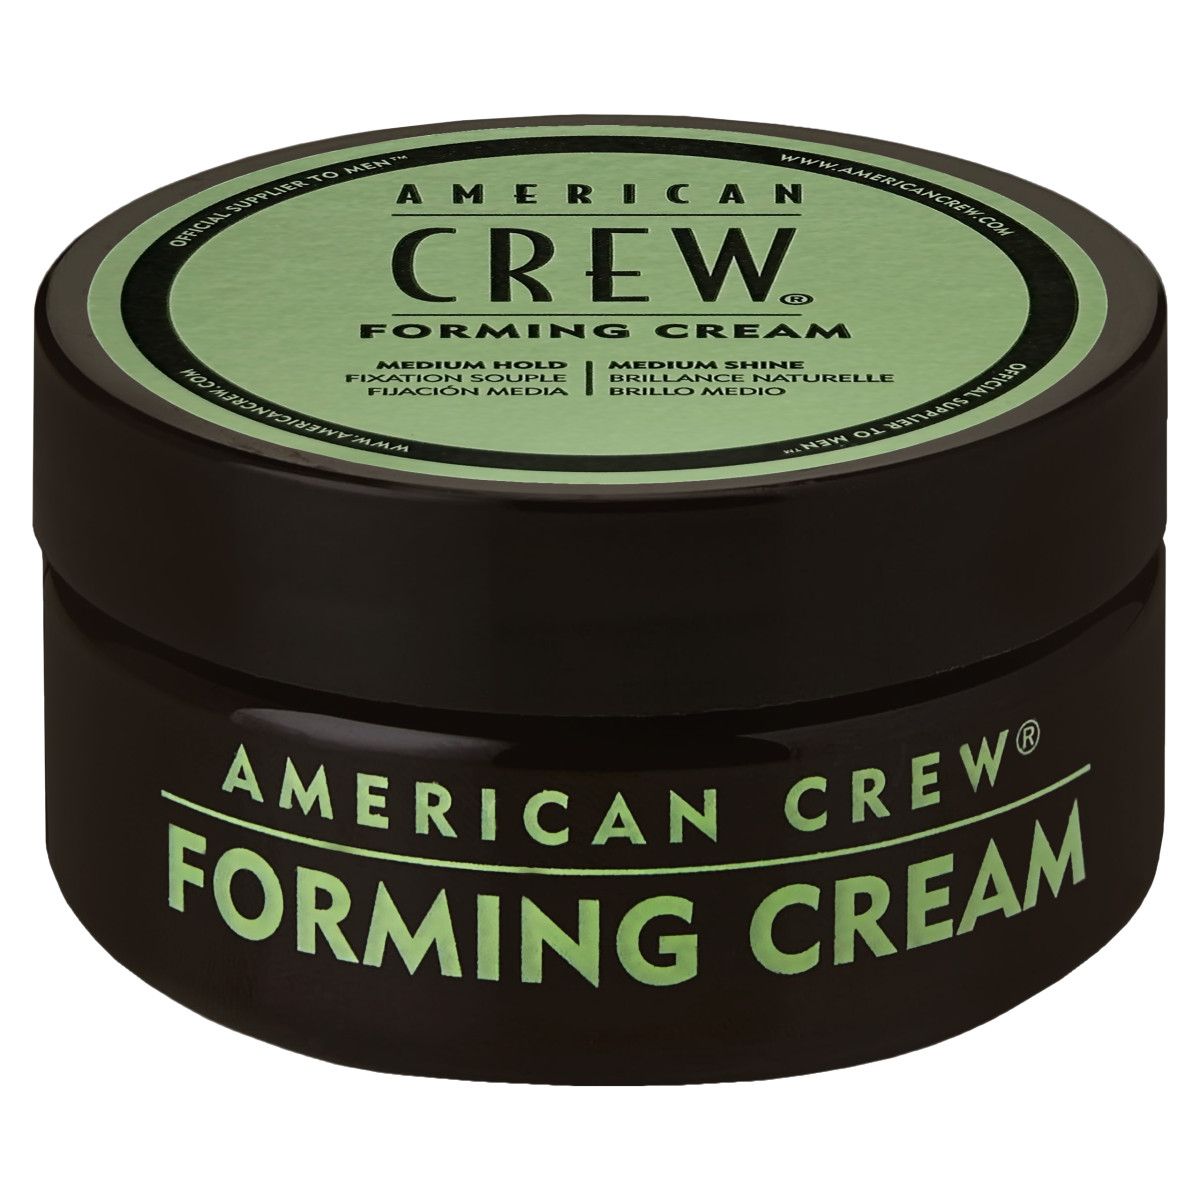 American Crew Forming Creme - krem do stylizacji włosów średnio mocny z połyskiem, 50g